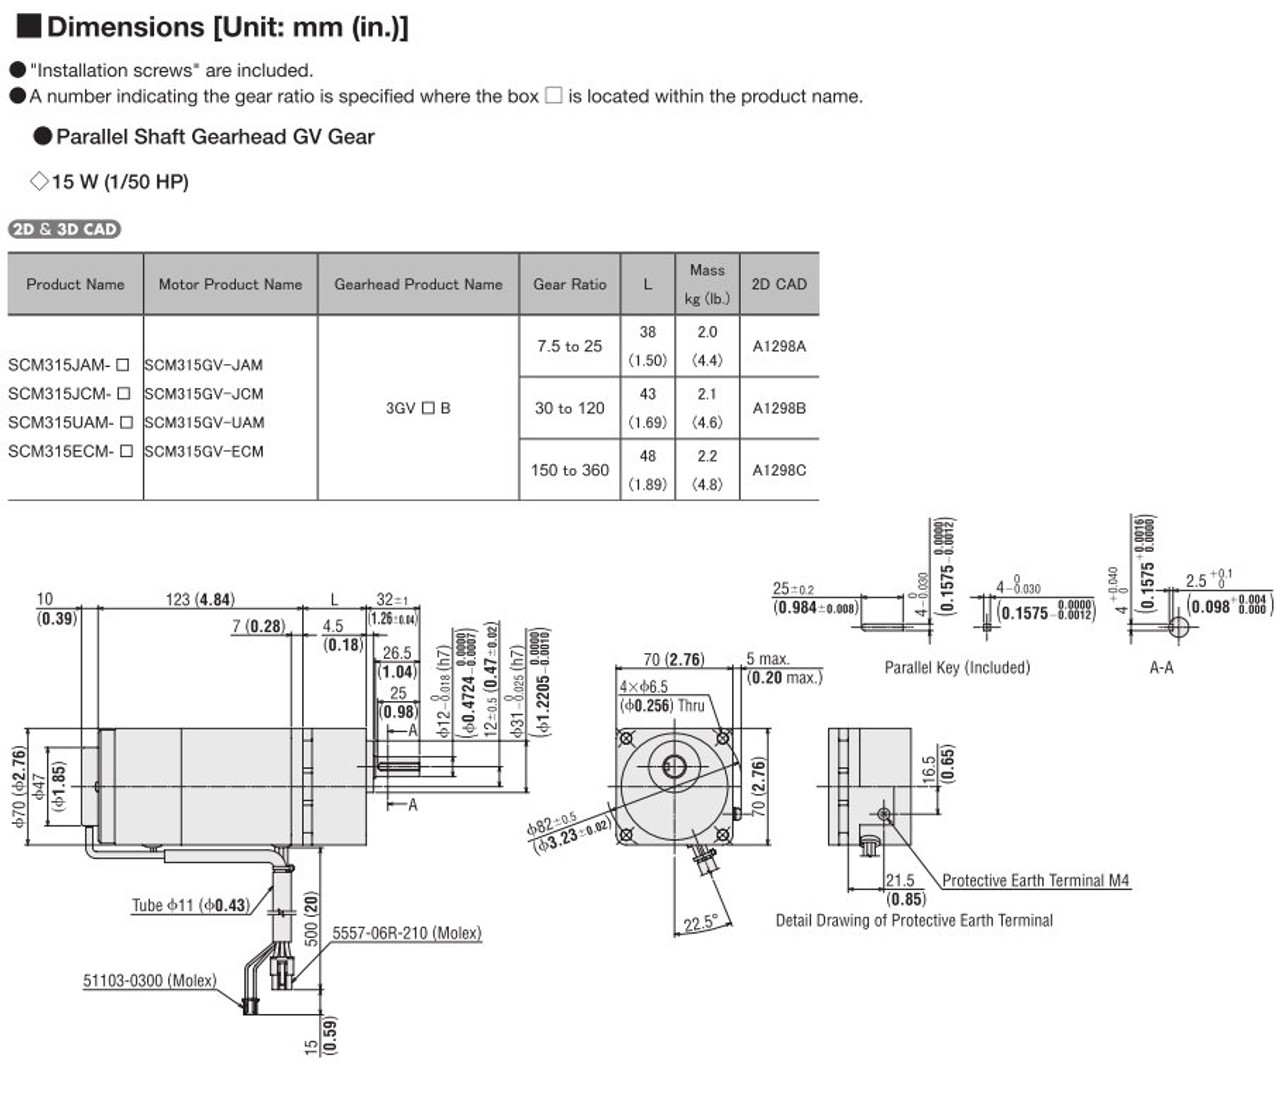 SCM315UAM-60 - Dimensions